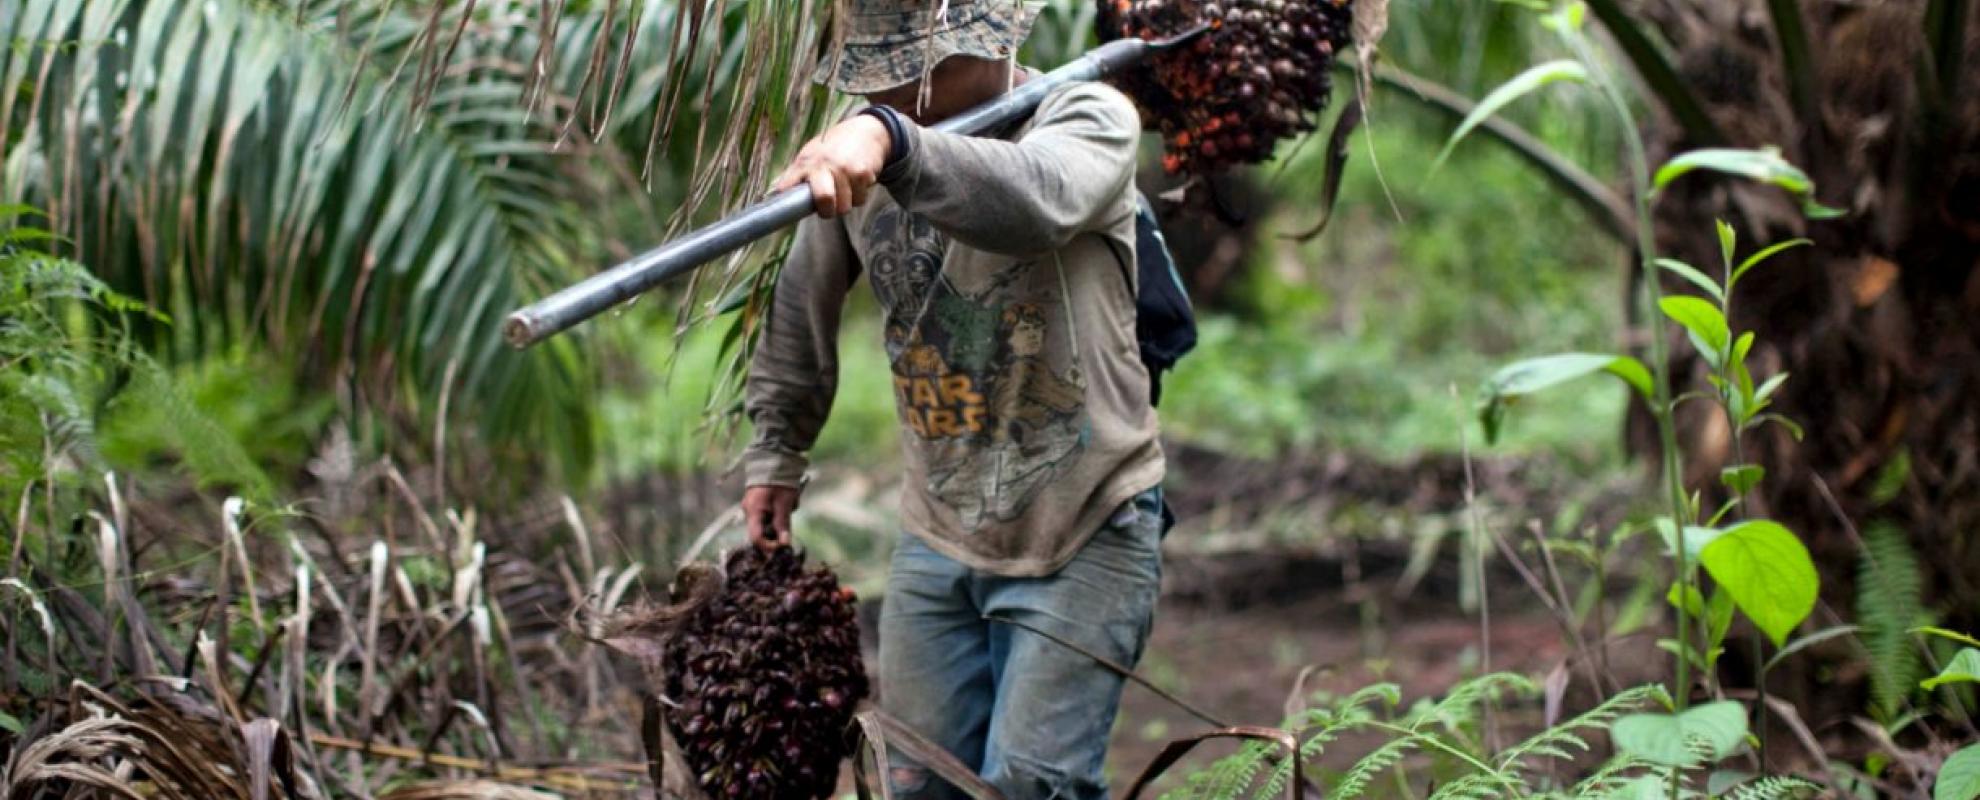 Arbeider in palmolieplantage